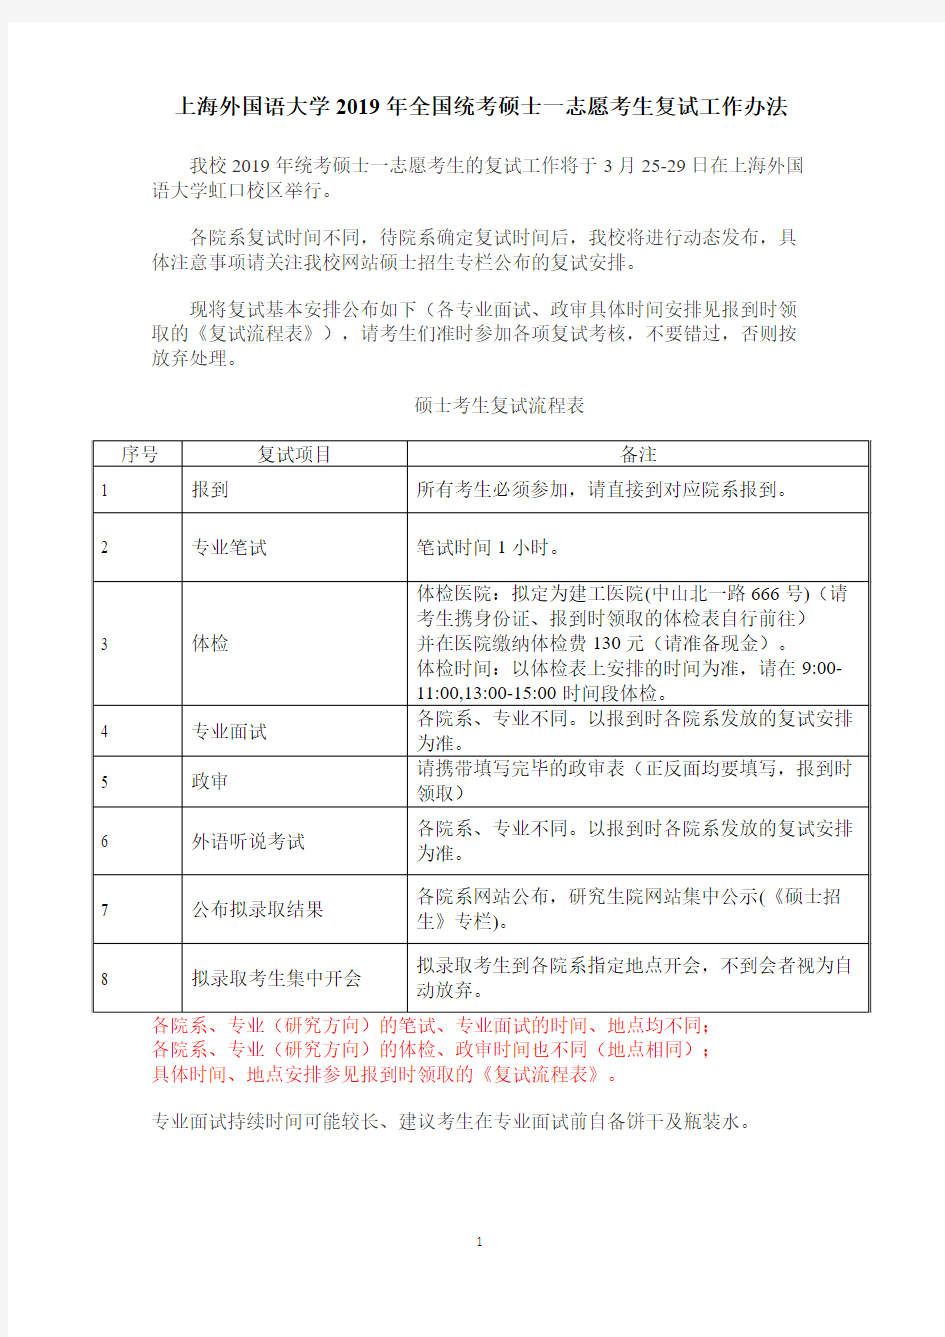 上海外国语大学2019年全国统考硕士一志愿考生复试工作办法.pdf